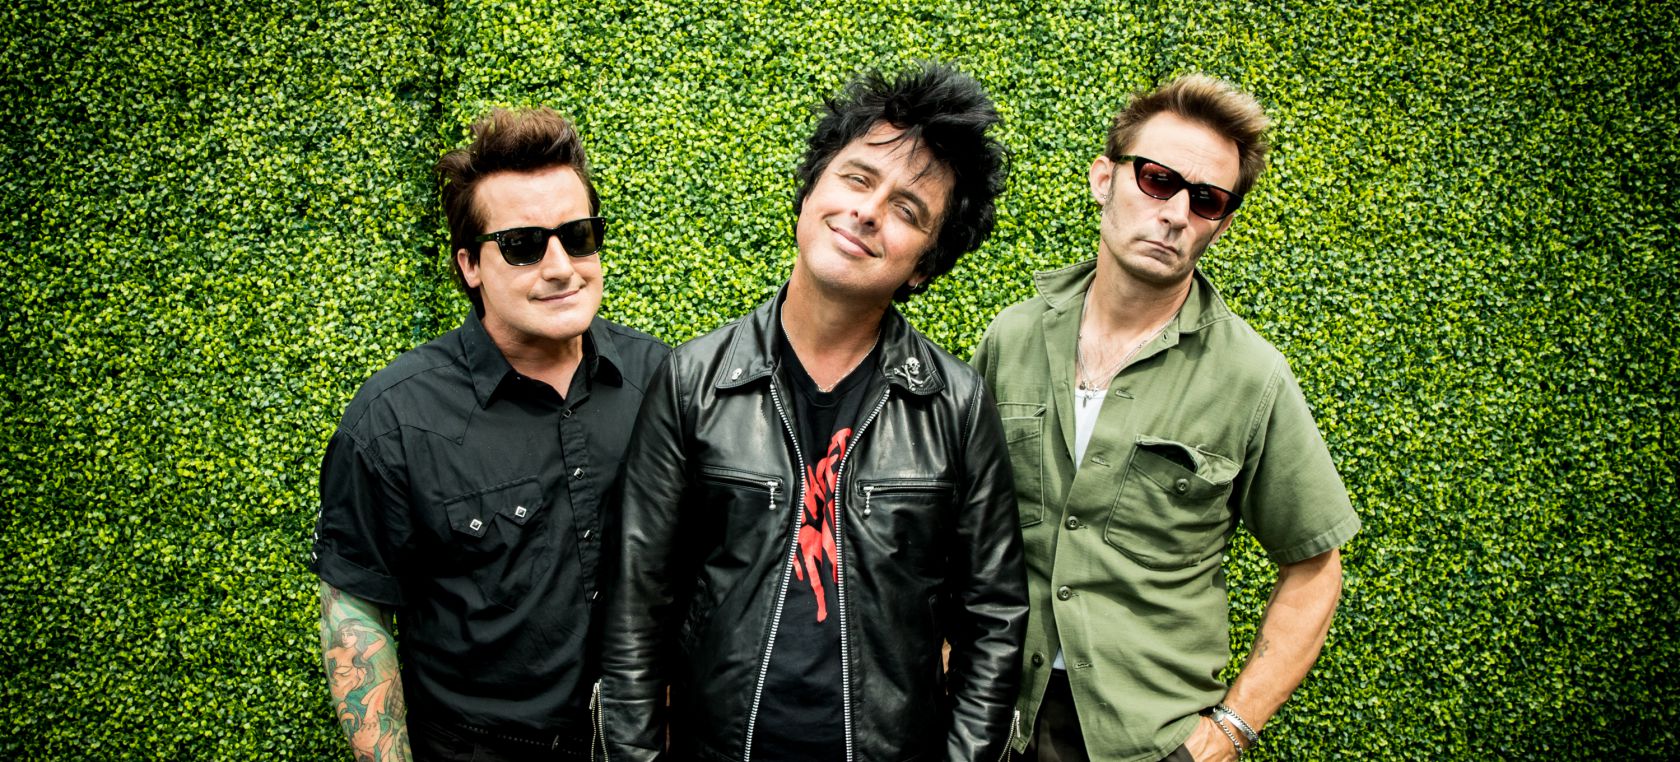 Billie Joe Armstrong, el cantante de Green Day, desvela el significado de 'Wake me up when September ends'